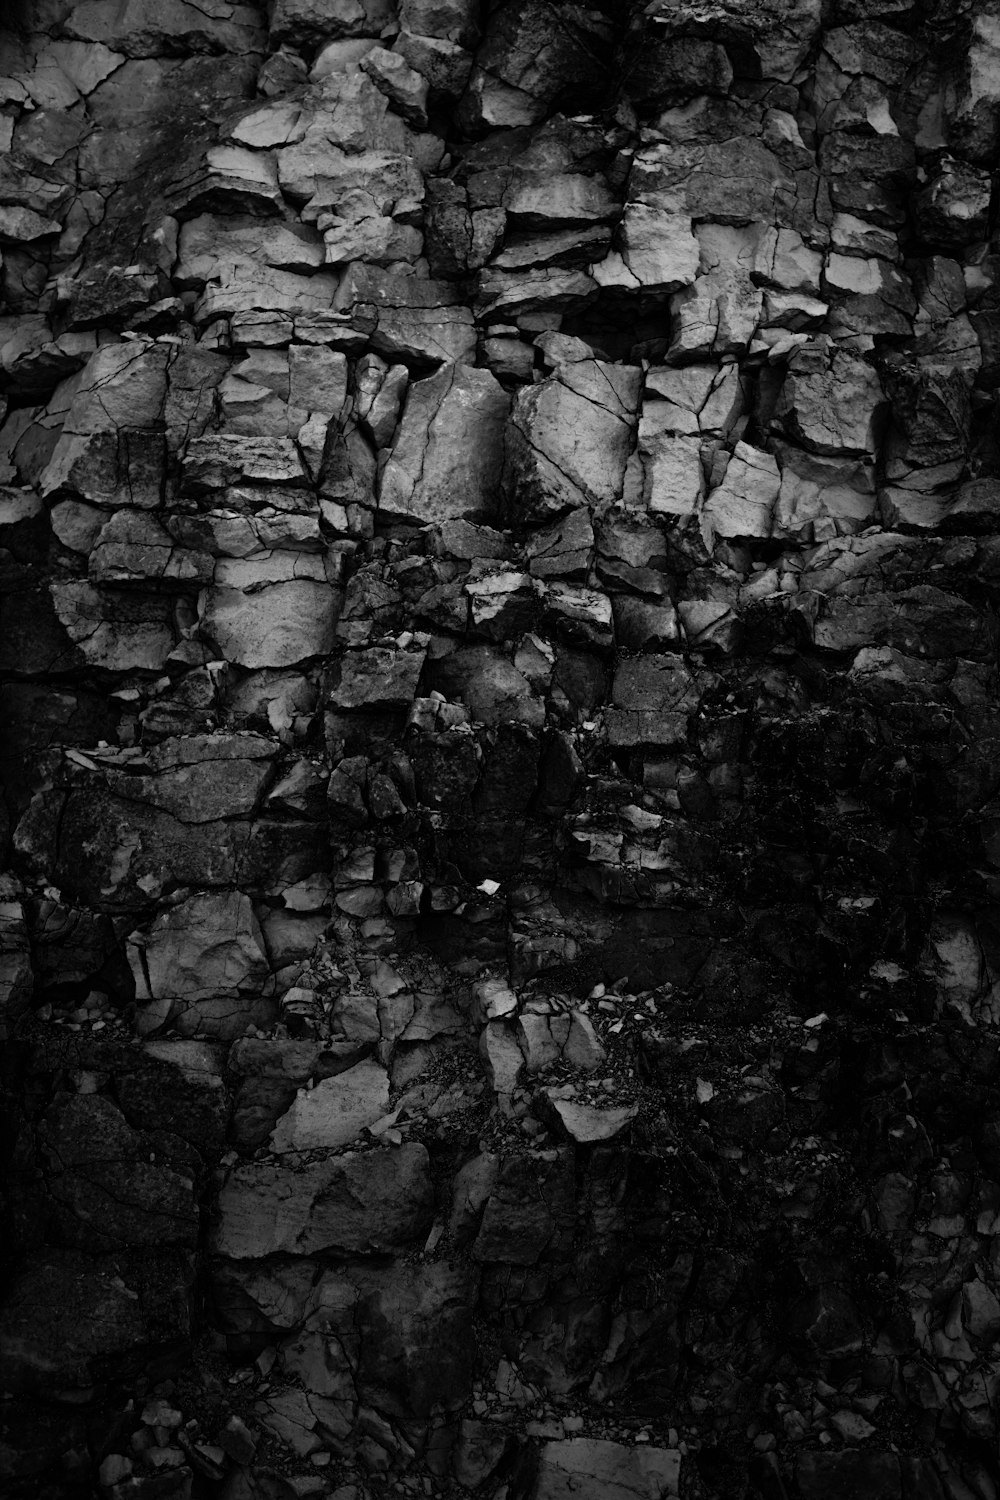 fotografia in scala di grigi di rocce